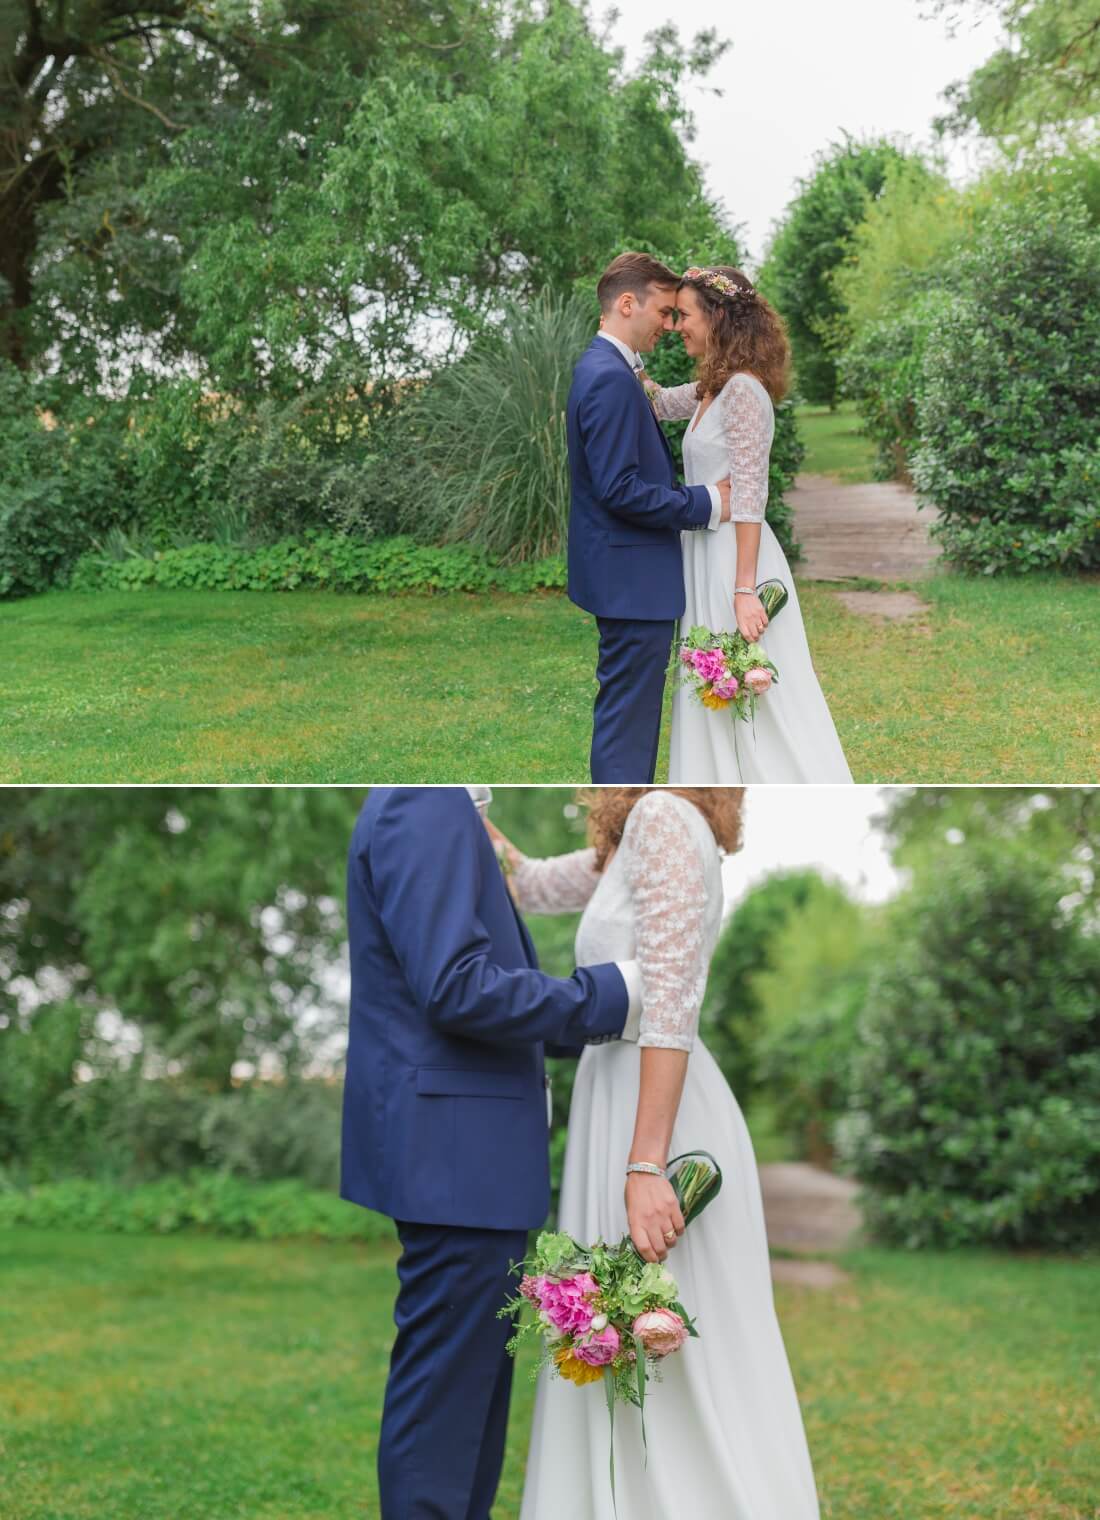 Photographe mariage à Tours - mariage champetre et boheme